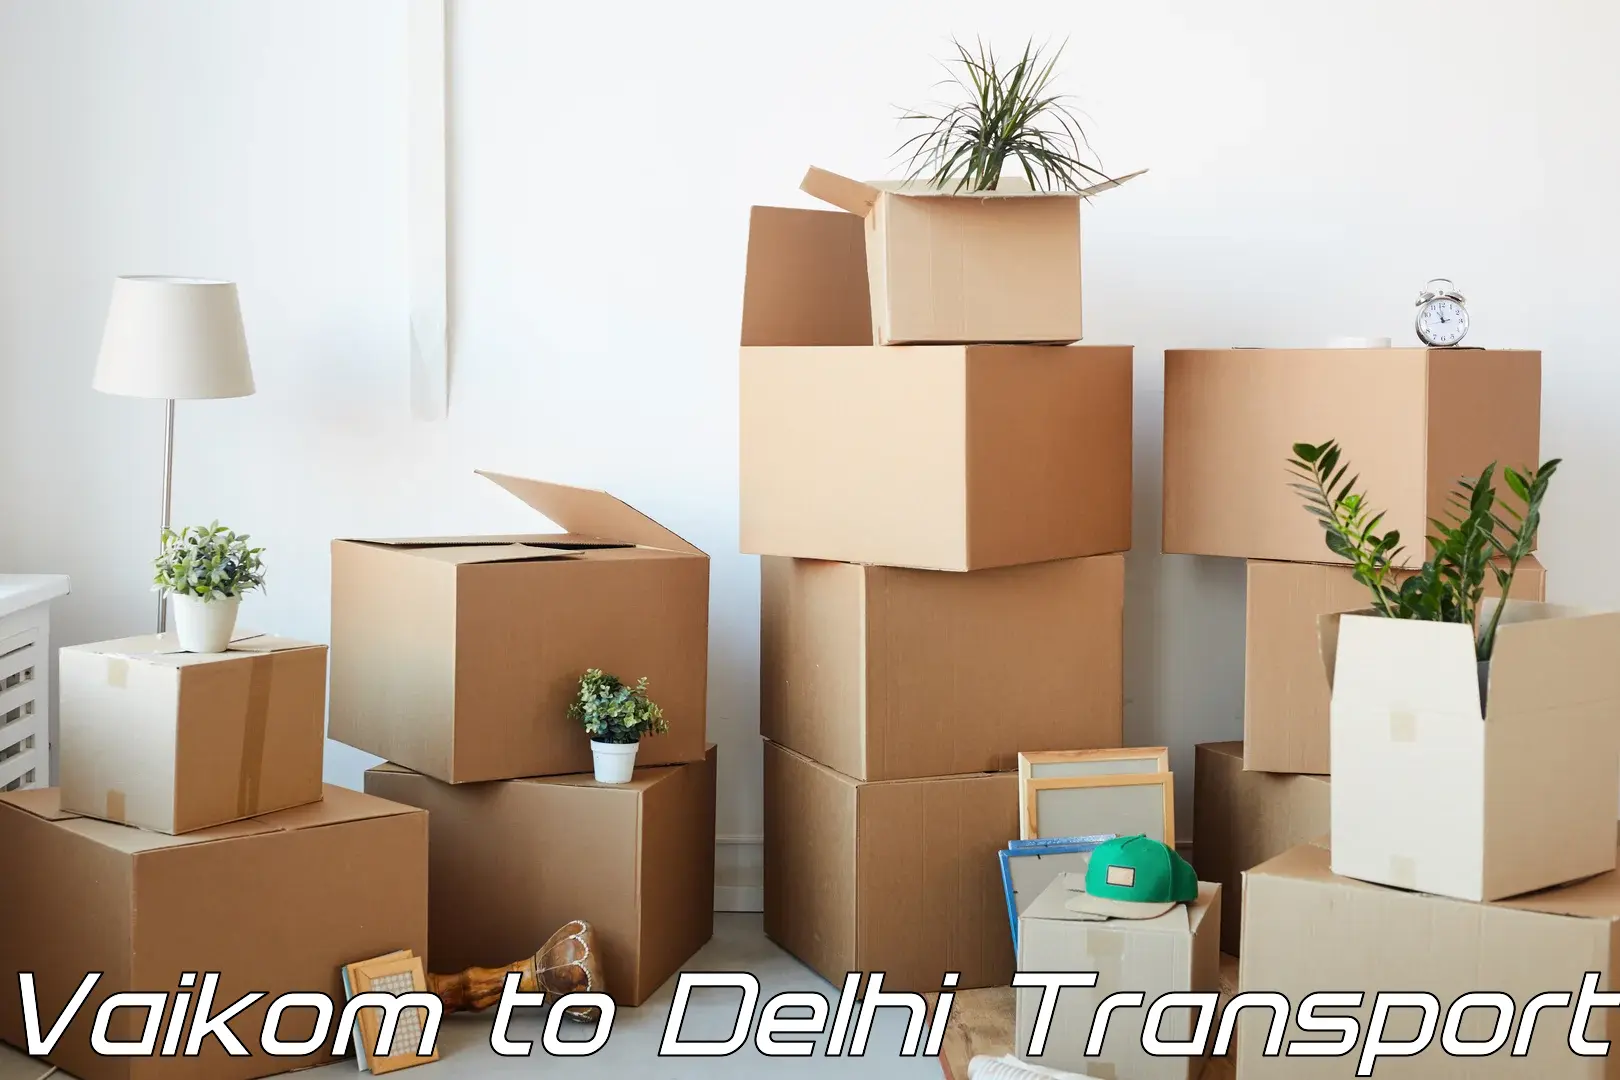 Transport in sharing Vaikom to University of Delhi